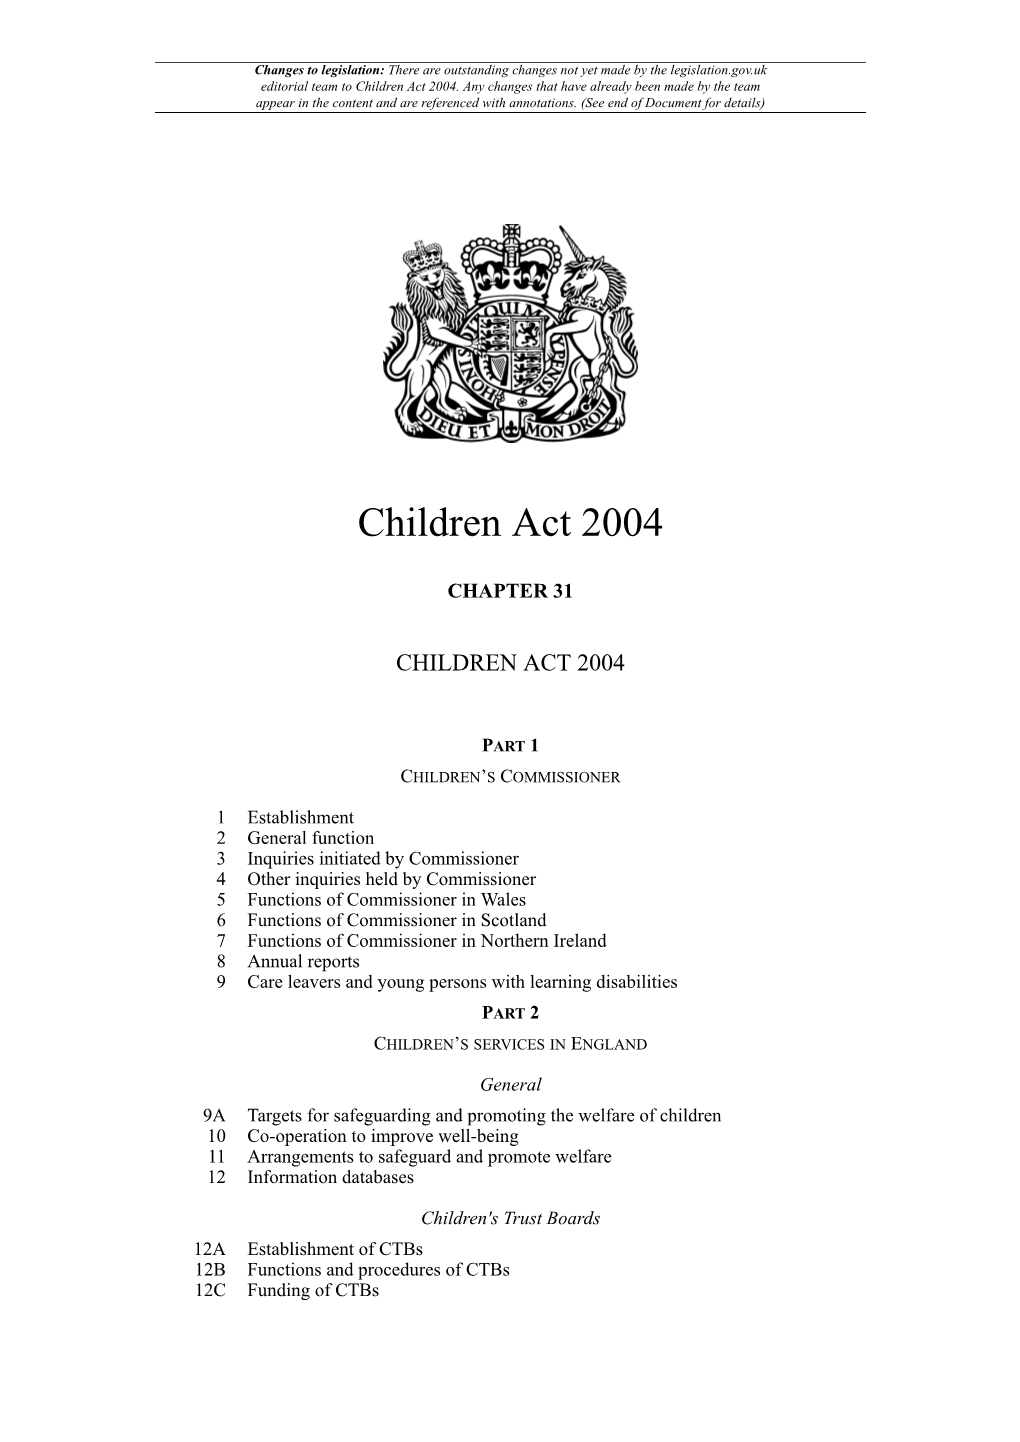 Children Act 2004